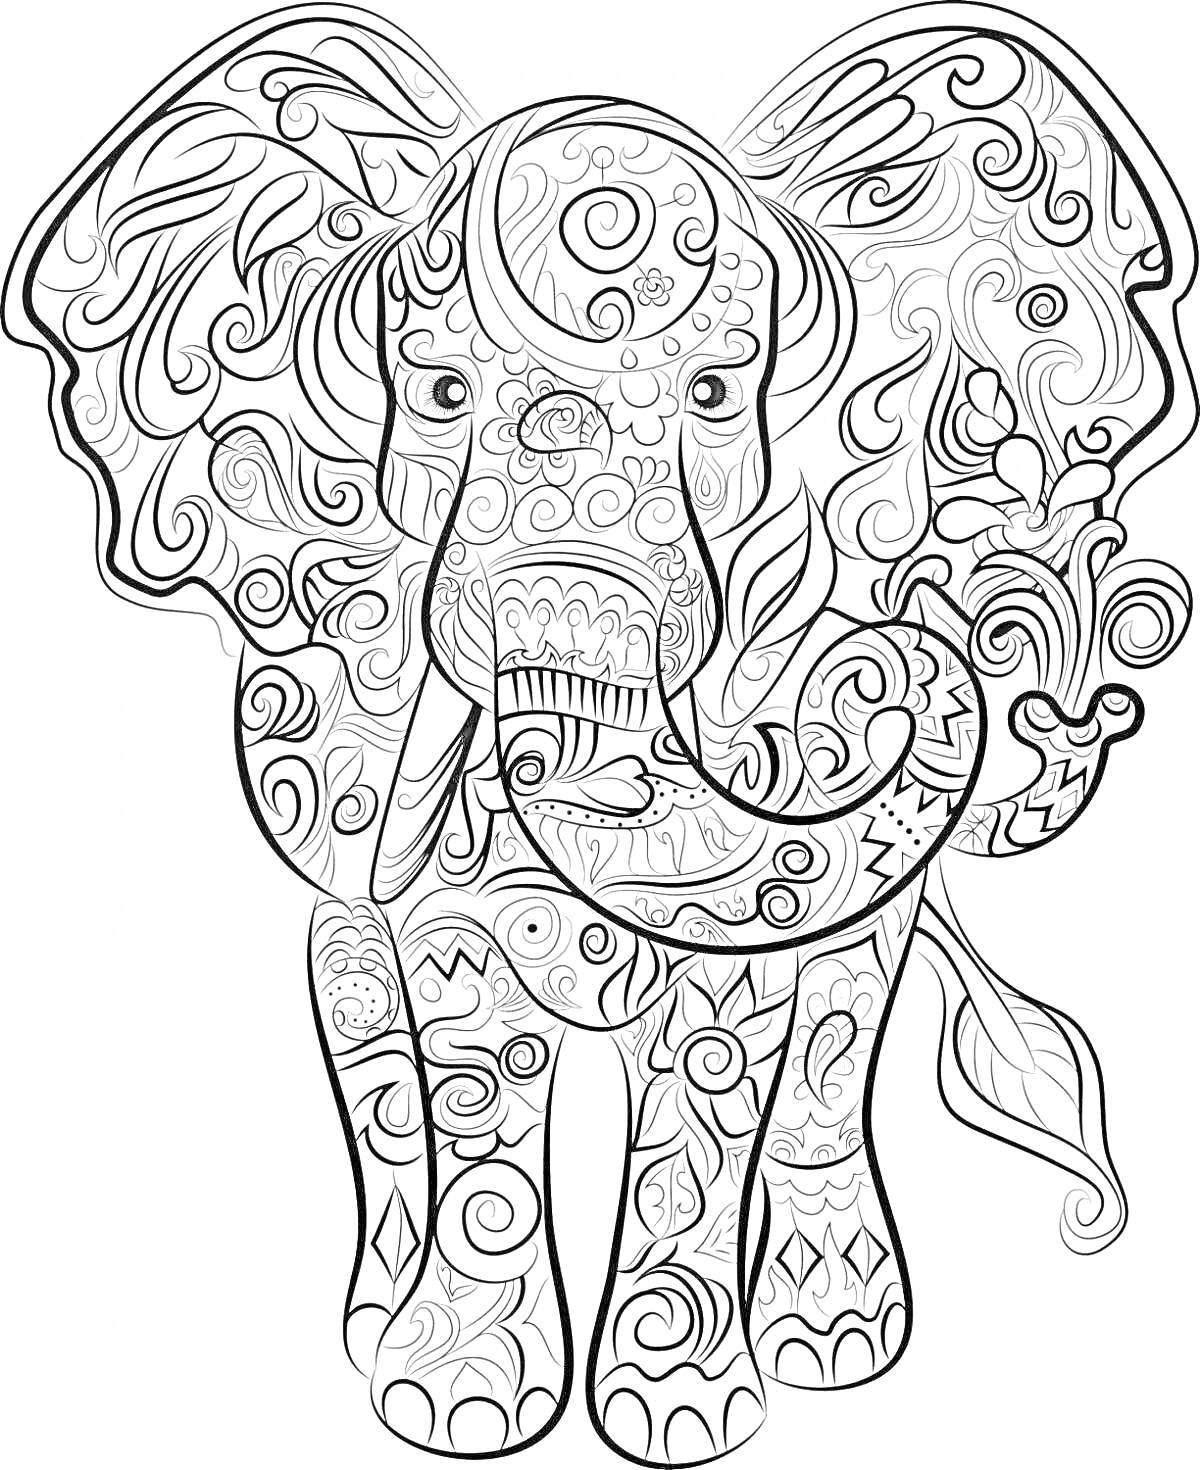 Раскраска Раскраска слона с развитым орнаментом, включающая детали в виде узоров и завитков по всему телу